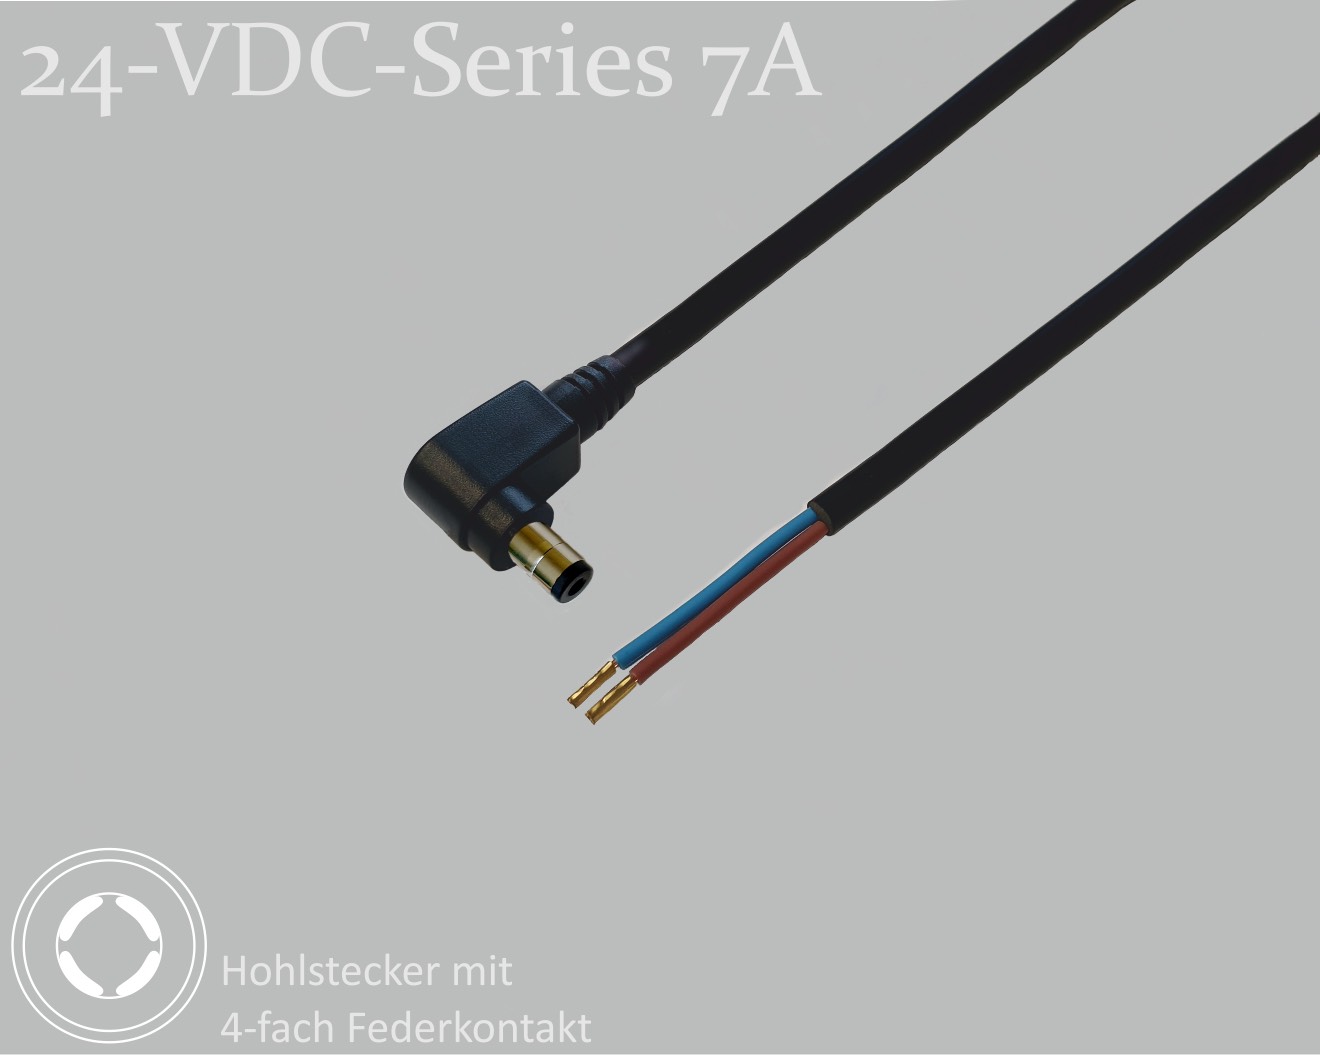 24-VDC-Series 7A, DC-Anschlusskabel, DC-Winkelstecker mit 4-Federkontakt 2,1x5,5x9,5mm, Rundkabel 2x0,50mm², schwarz, Aderendhülsen, 1,5m